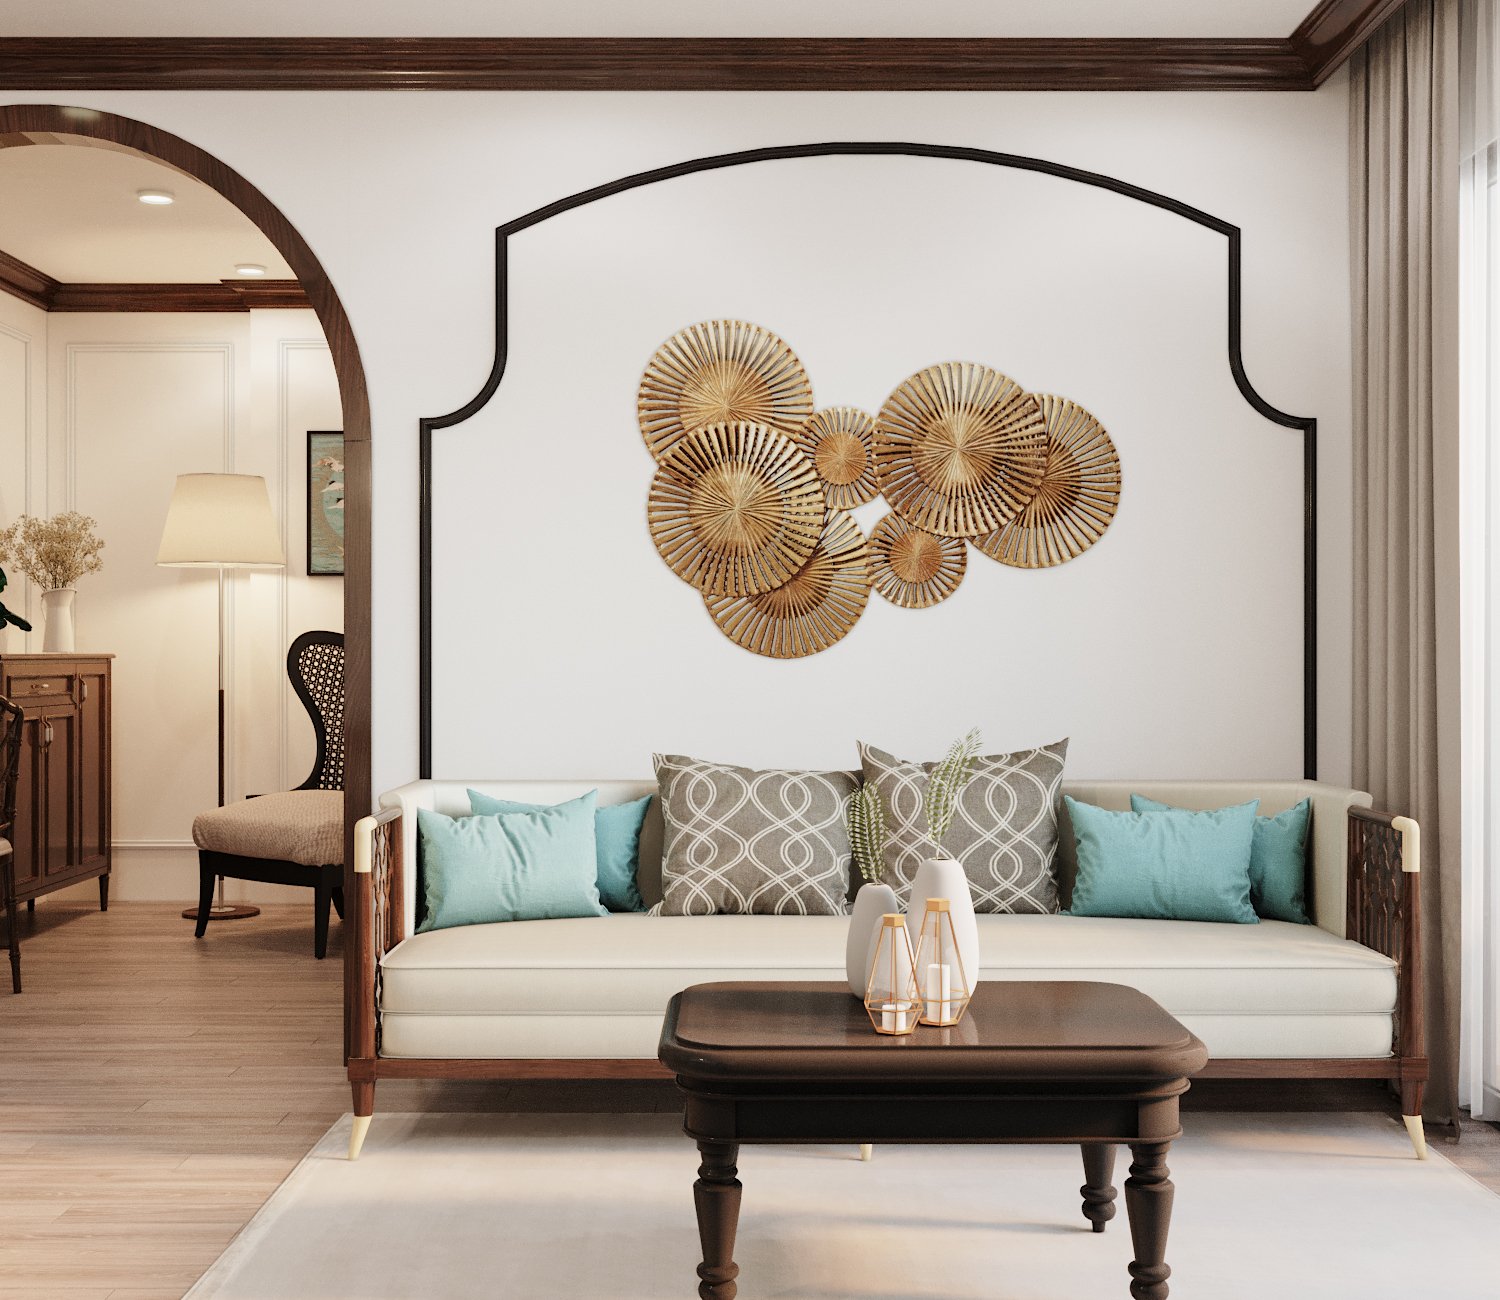 Phòng khách căn hộ nhỏ tối giản chỉ với băng ghế dài êm ái, bàn trà gỗ nhỏ xinh đặt gọn gàng trên thảm trải cùng tông với màu tường.